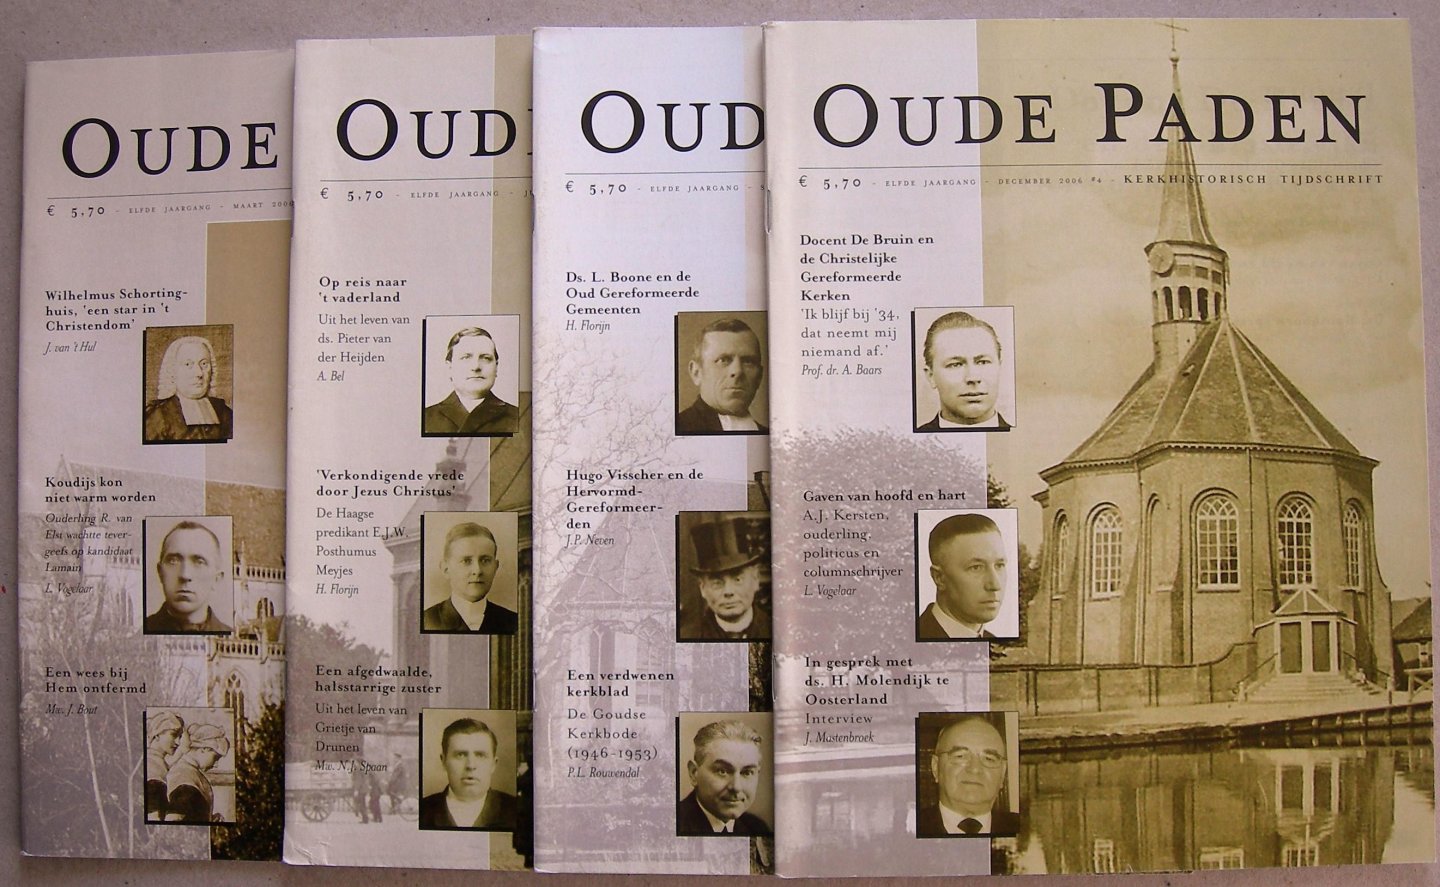 Mastenbroek, J. e.a. (red.) - Oude paden (kerkhistorisch tijdschrift), elfde jrg. 2006 kompleet.